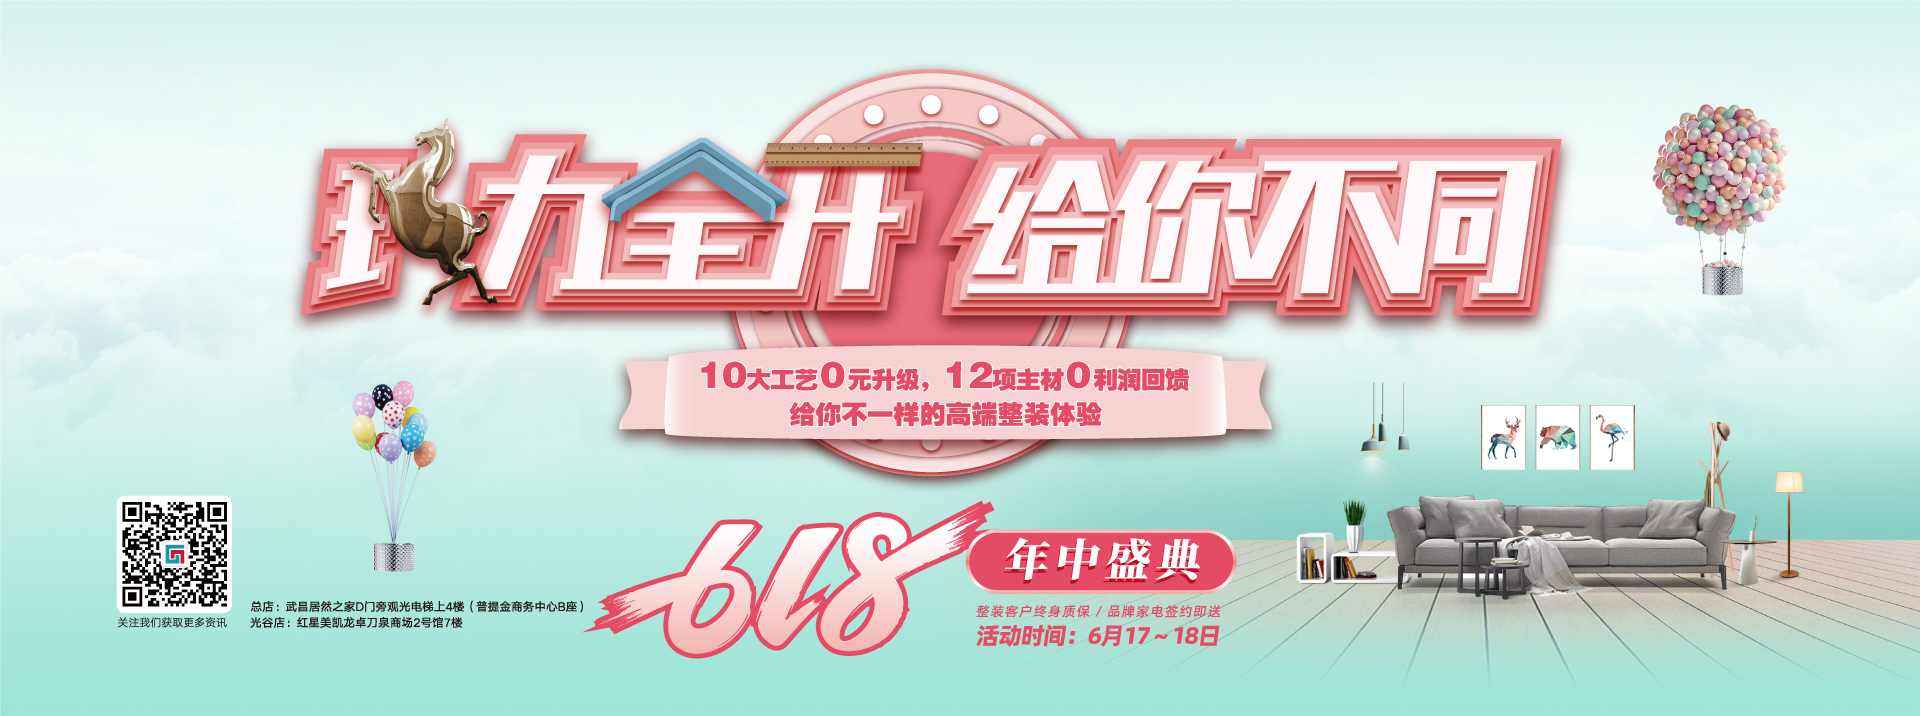 720sao在线视频六西格玛装饰活动海报